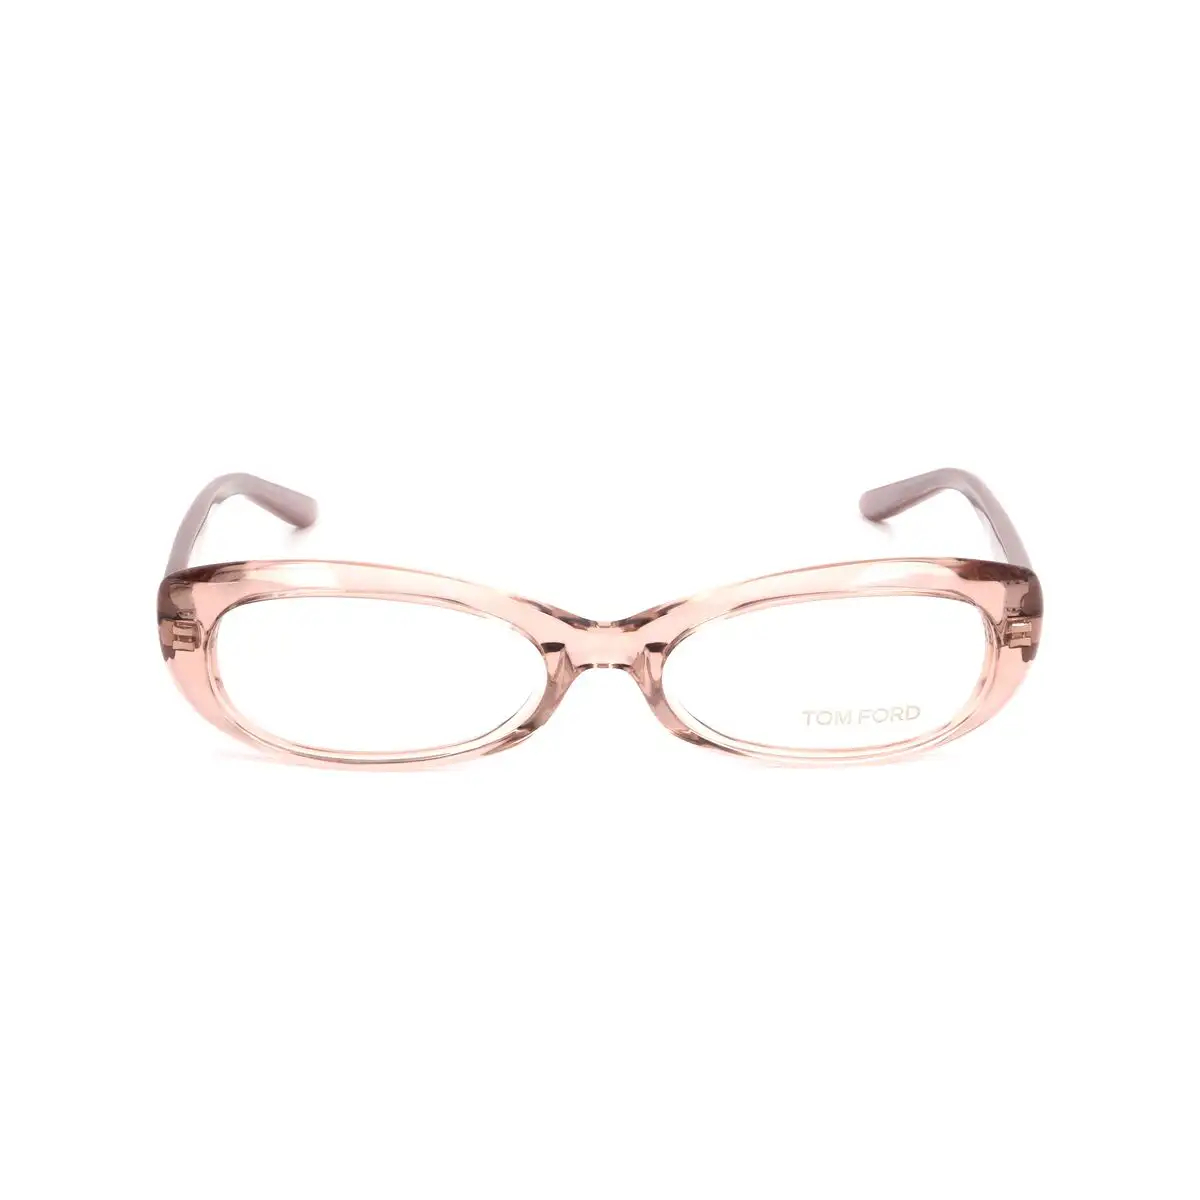 Monture de lunettes femme tom ford ft5141 020 gris_6176. DIAYTAR SENEGAL - Là où Chaque Produit est une Trouvaille Unique. Découvrez notre boutique en ligne et trouvez des articles qui vous distinguent par leur originalité.